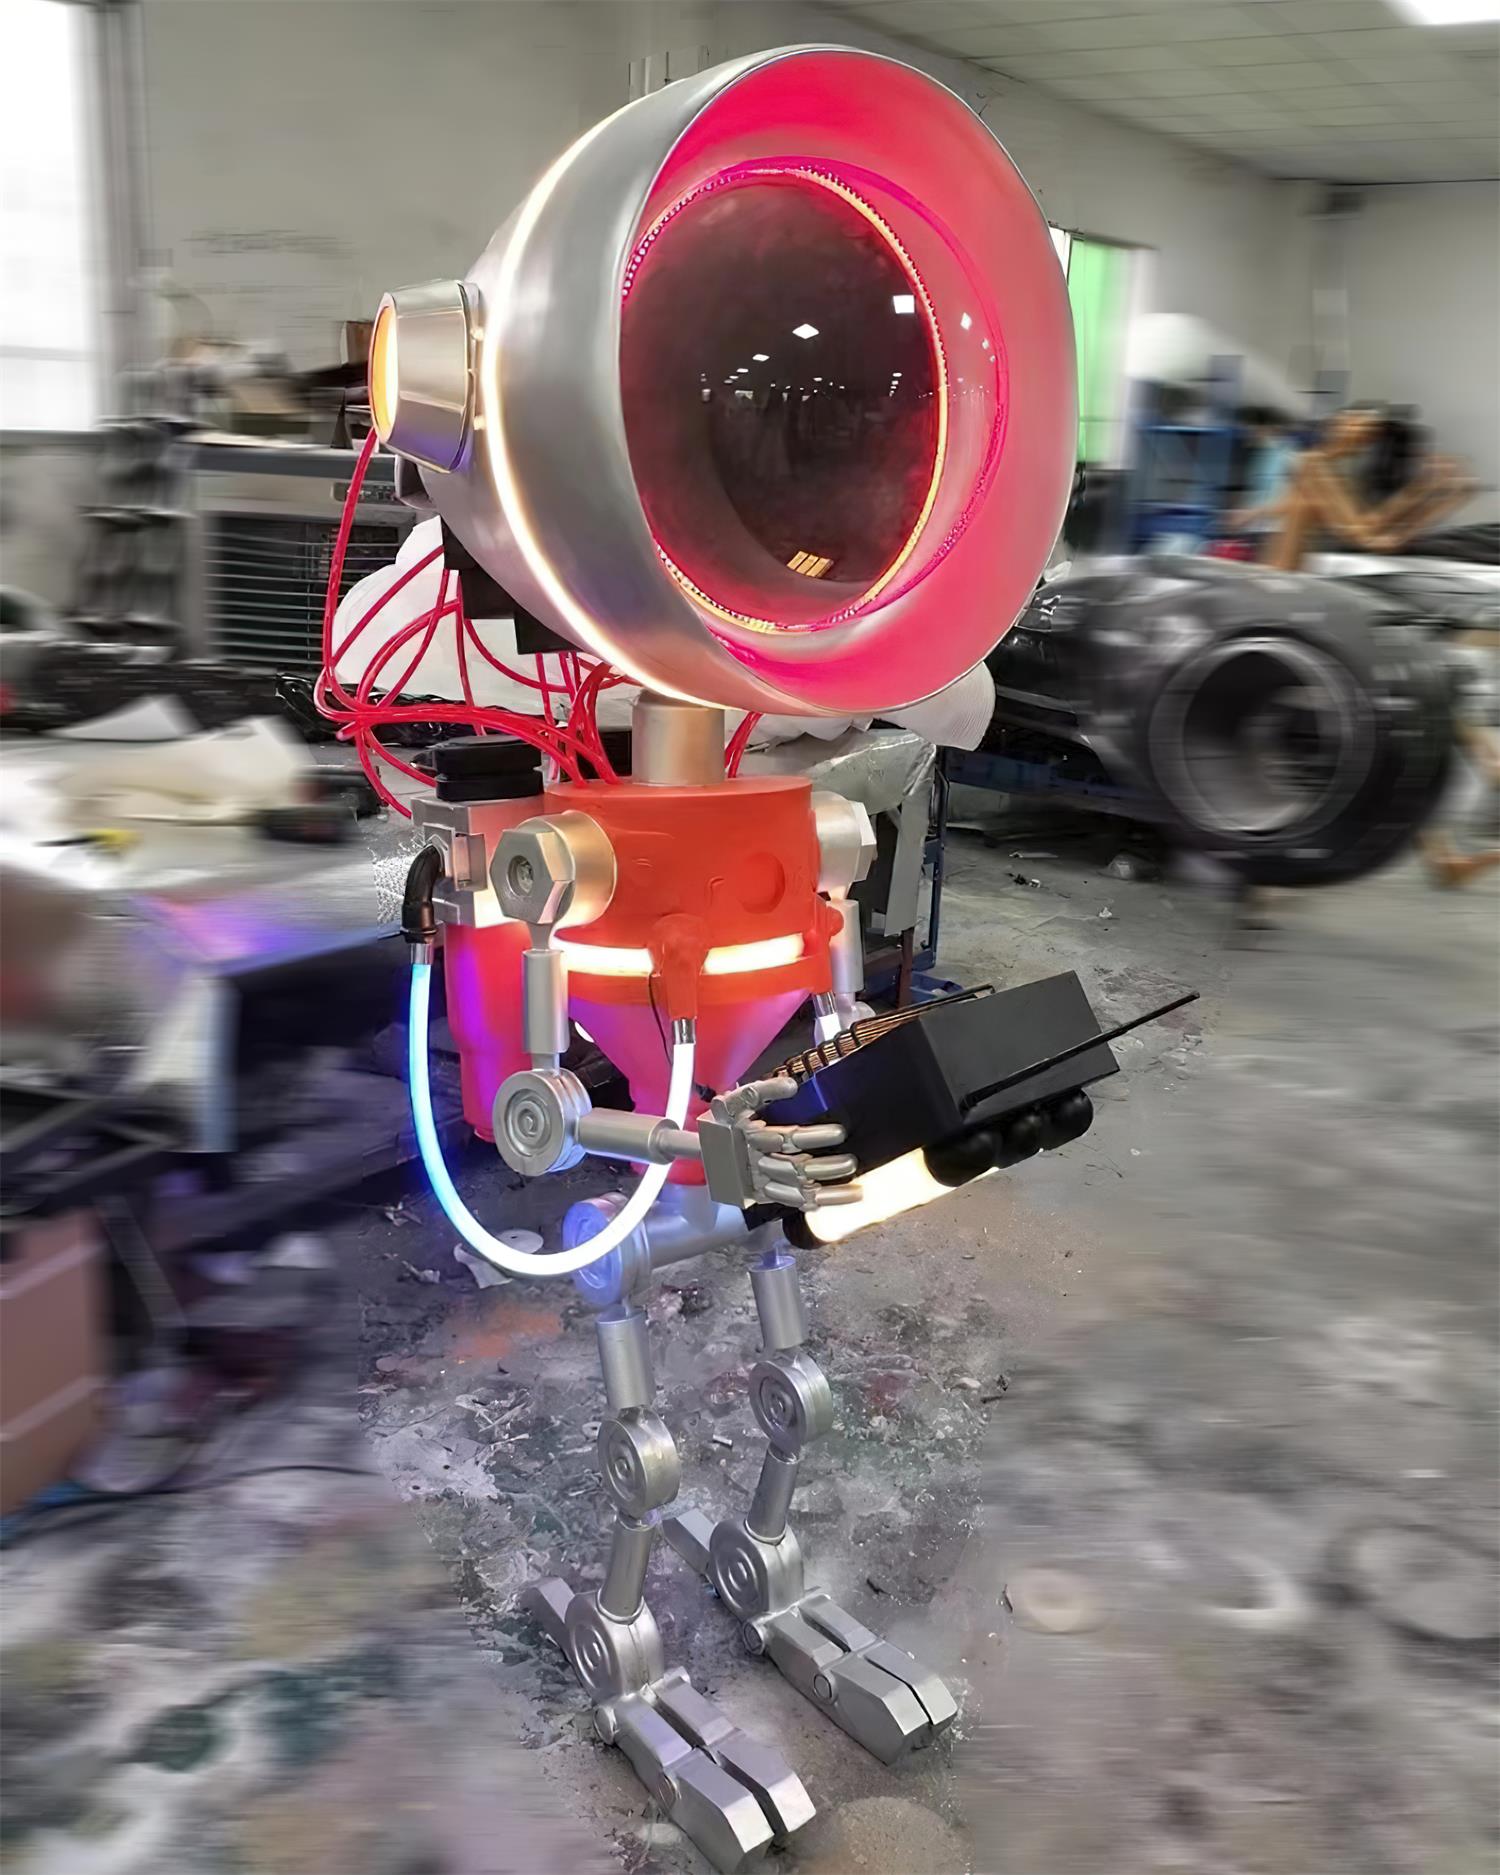 Robot Floor Lamp